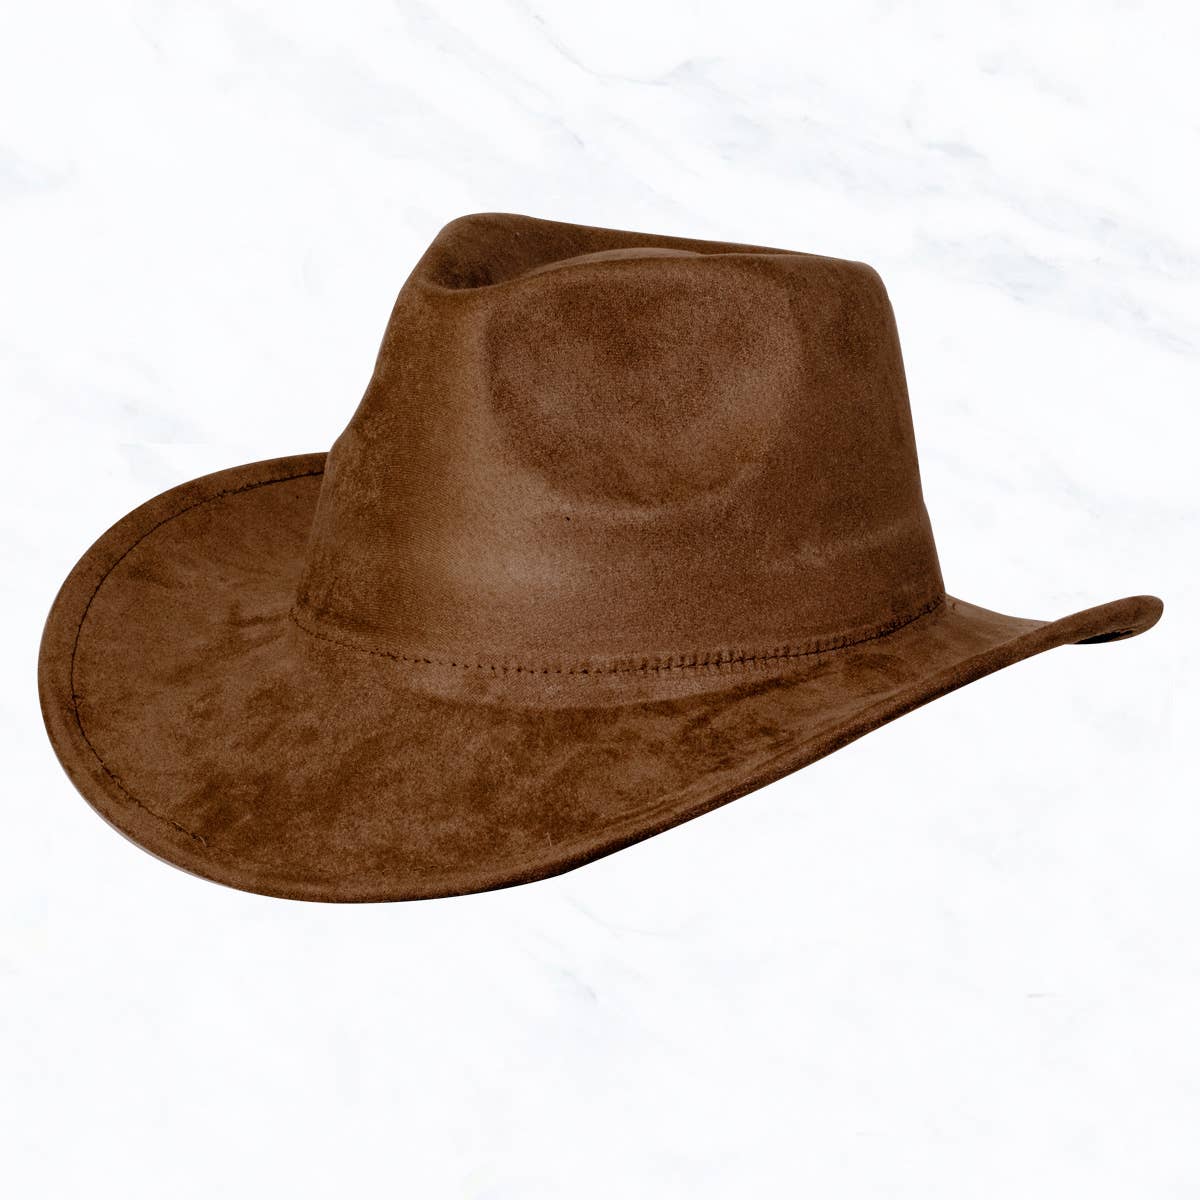 Suzie Q USA - Suede Regular Cowboy Fedora Hat: Coffee